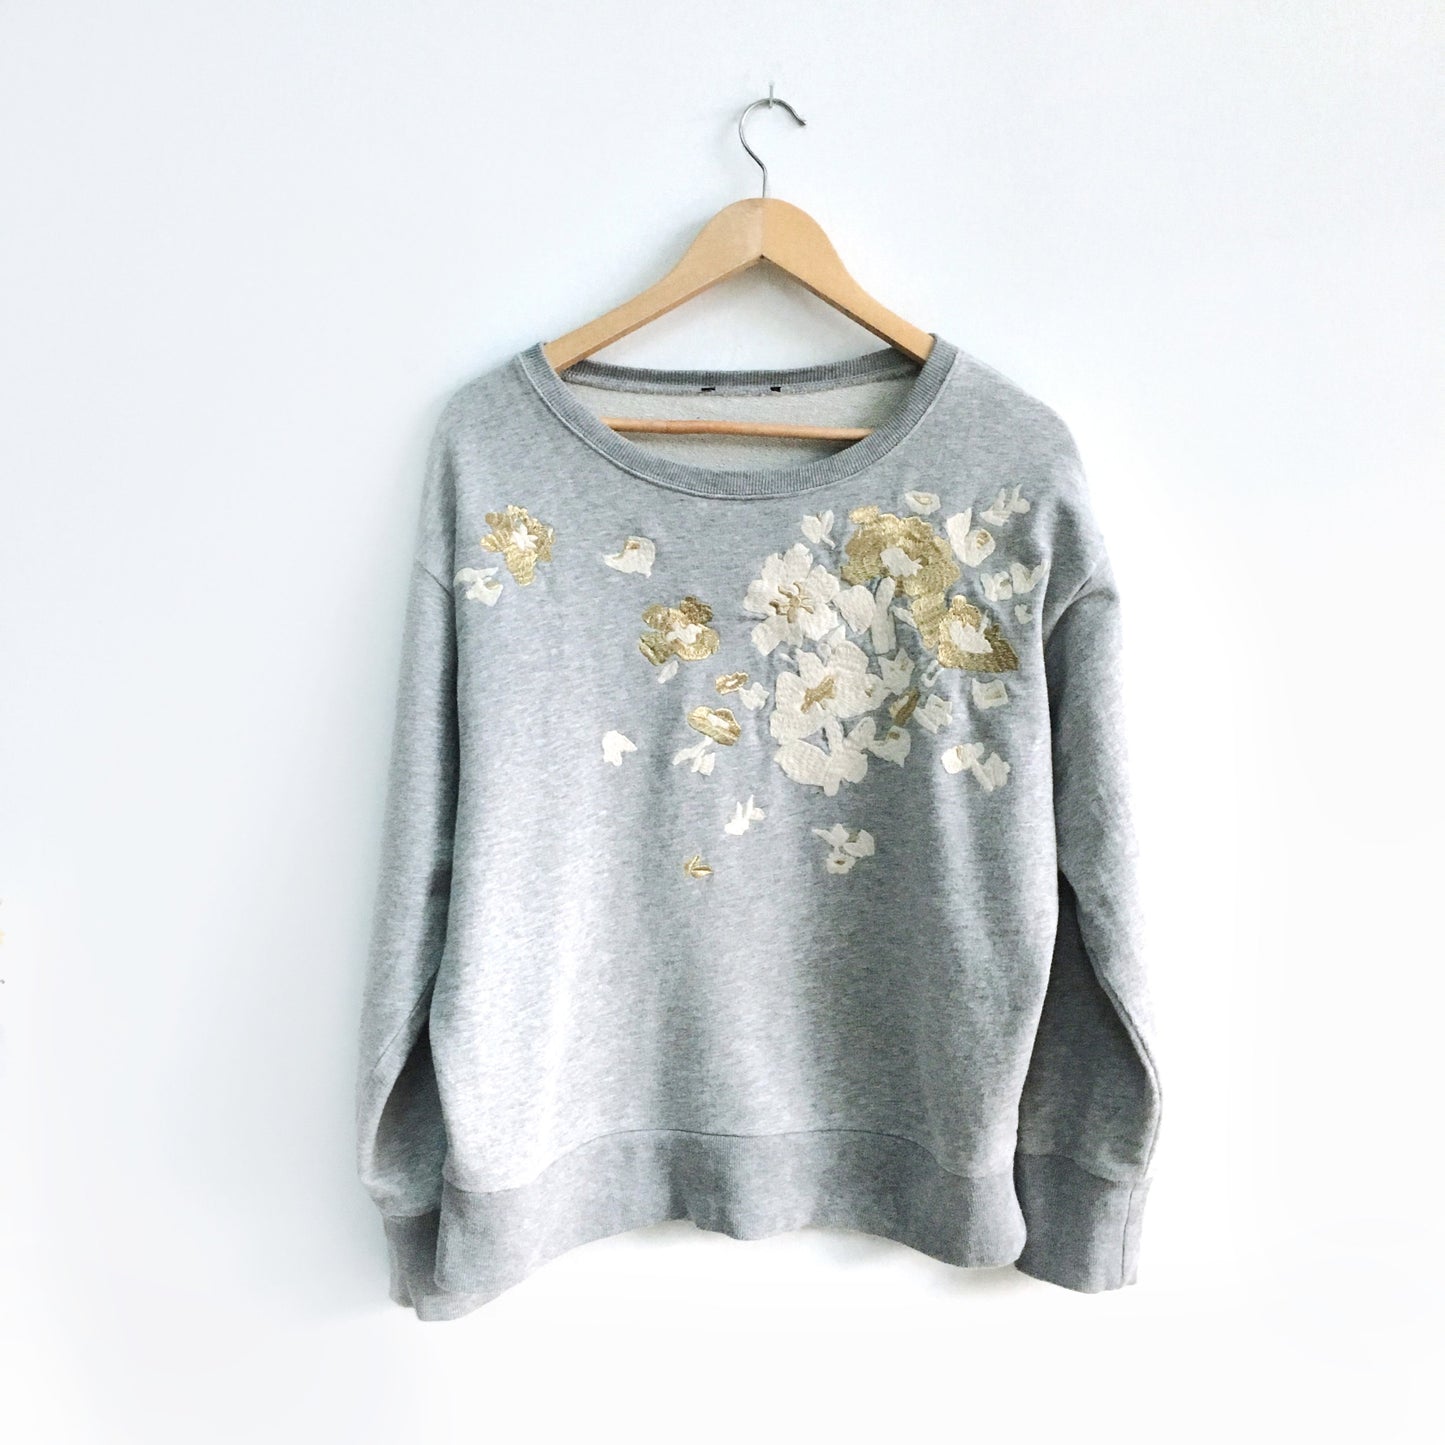 J Crew Embroidered Flower Sweatshirt - size Medium